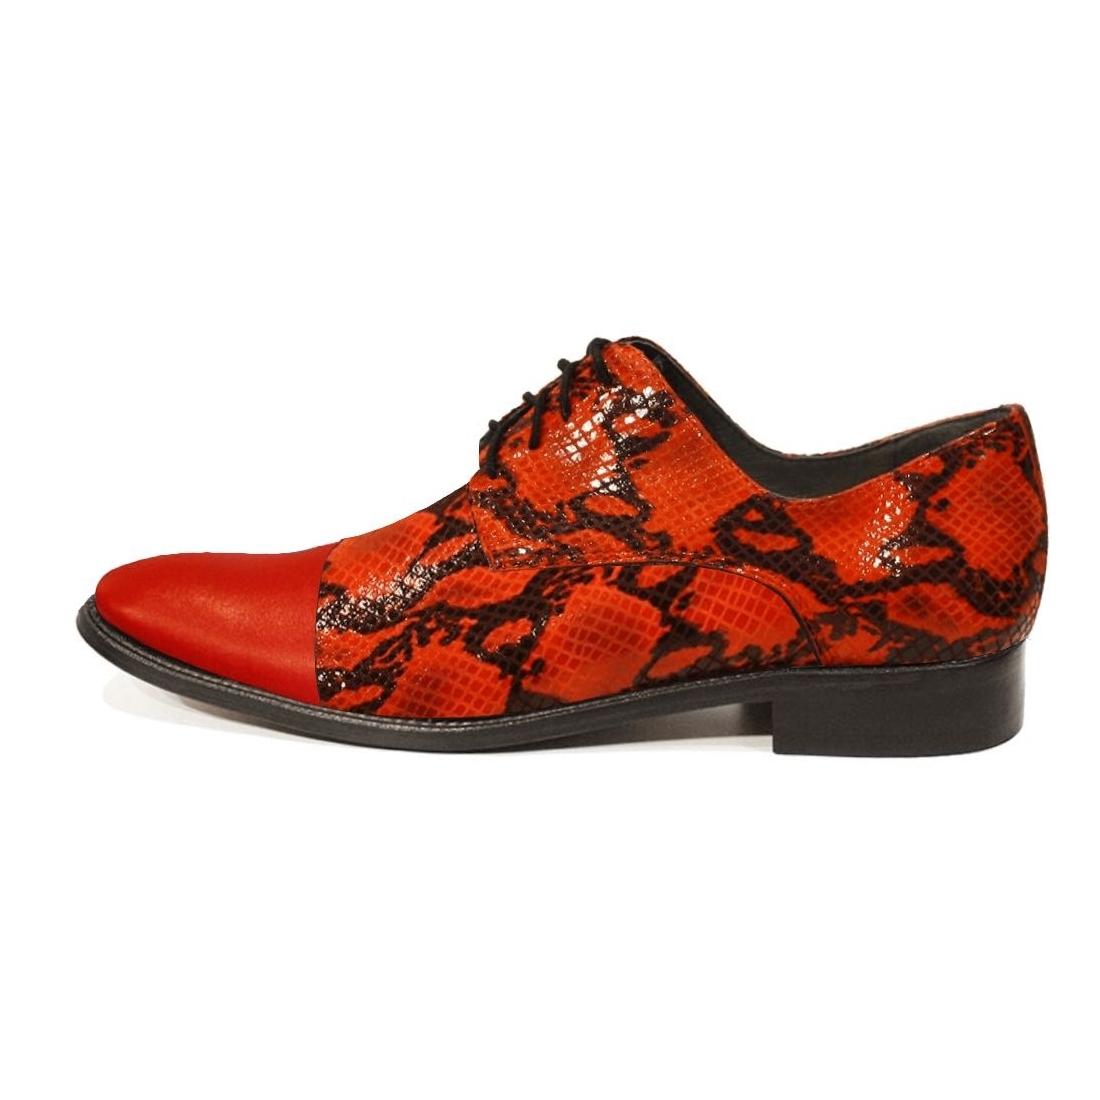 Modello Papello - Buty Klasyczne - Handmade Colorful Italian Leather Shoes